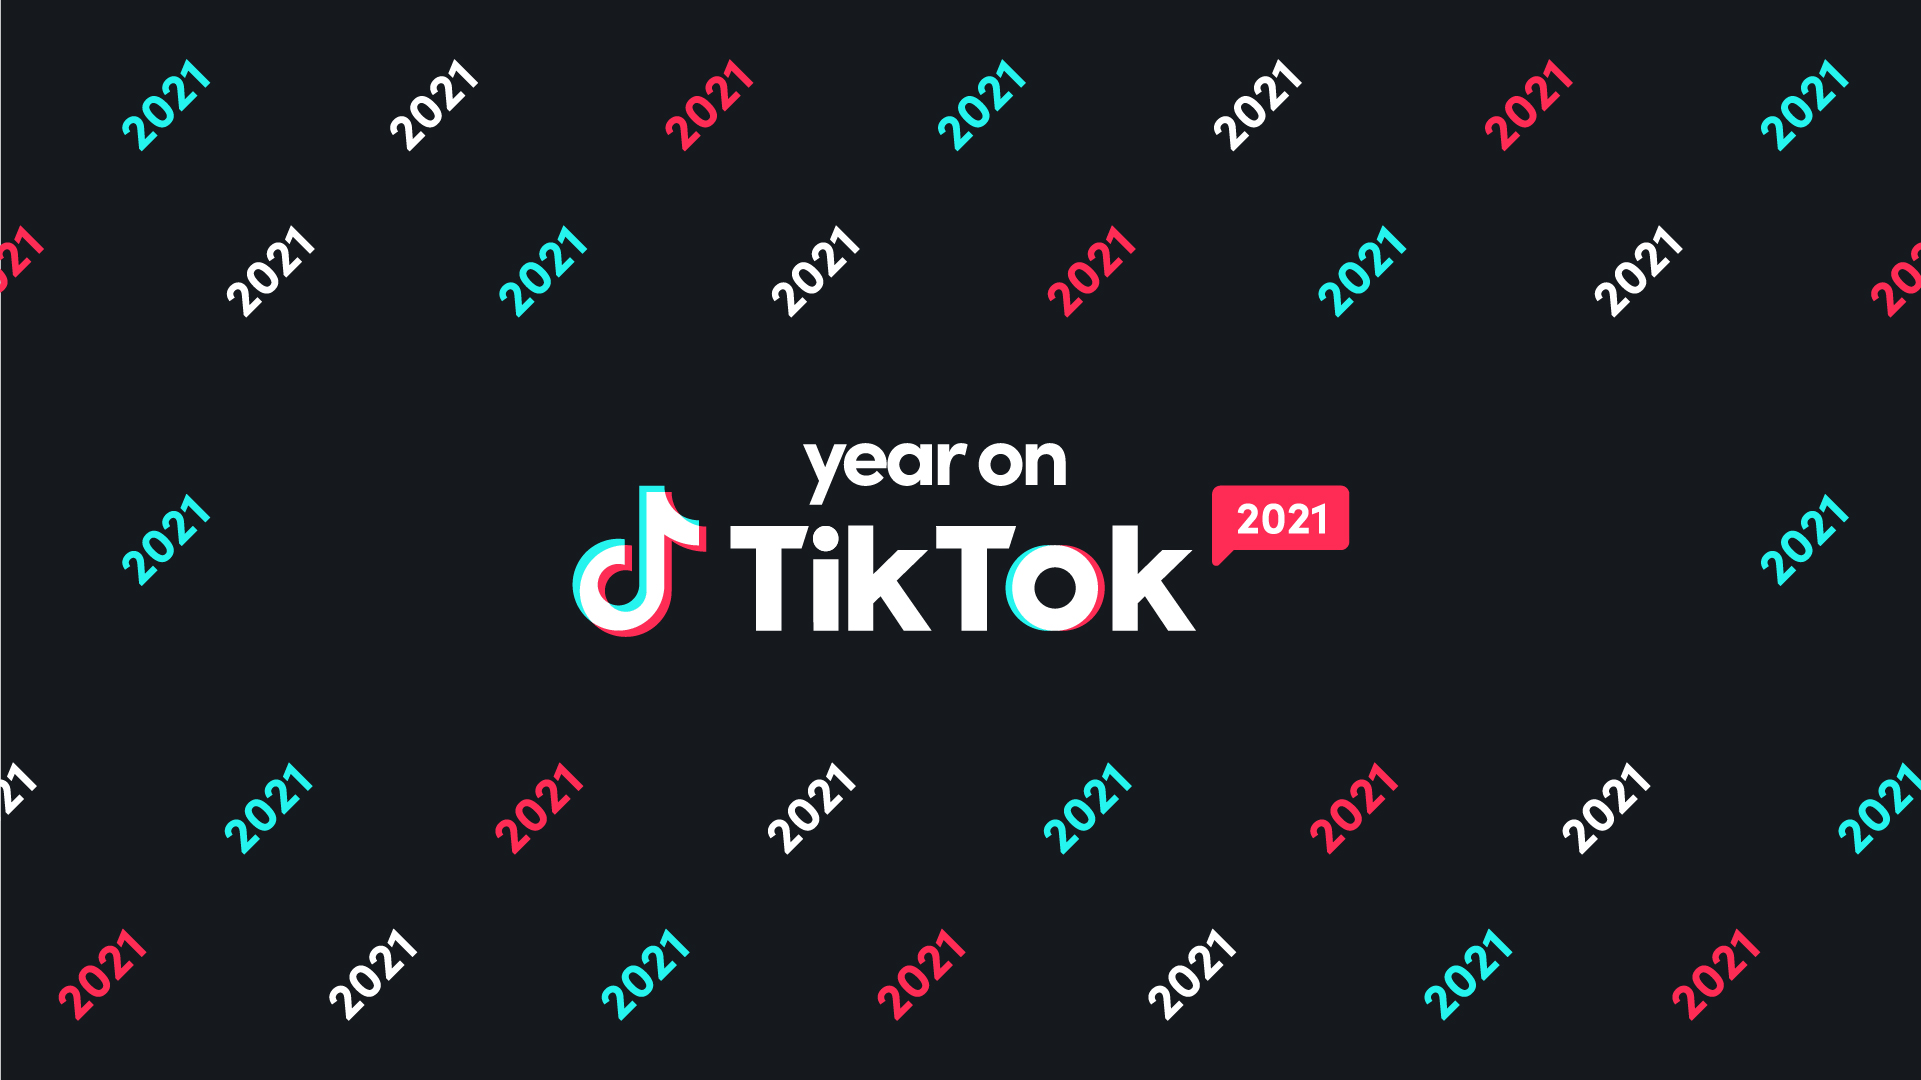 Tổng kết Year on TikTok sẽ mang lại cho bạn một cái nhìn tổng quan về những nội dung, xu hướng và thần tượng hot nhất trên TikTok trong năm vừa qua. Đừng bỏ lỡ cơ hội để cảm nhận sức hút của ứng dụng này và tìm hiểu thêm về những điều mới mẻ tại Year on TikTok.